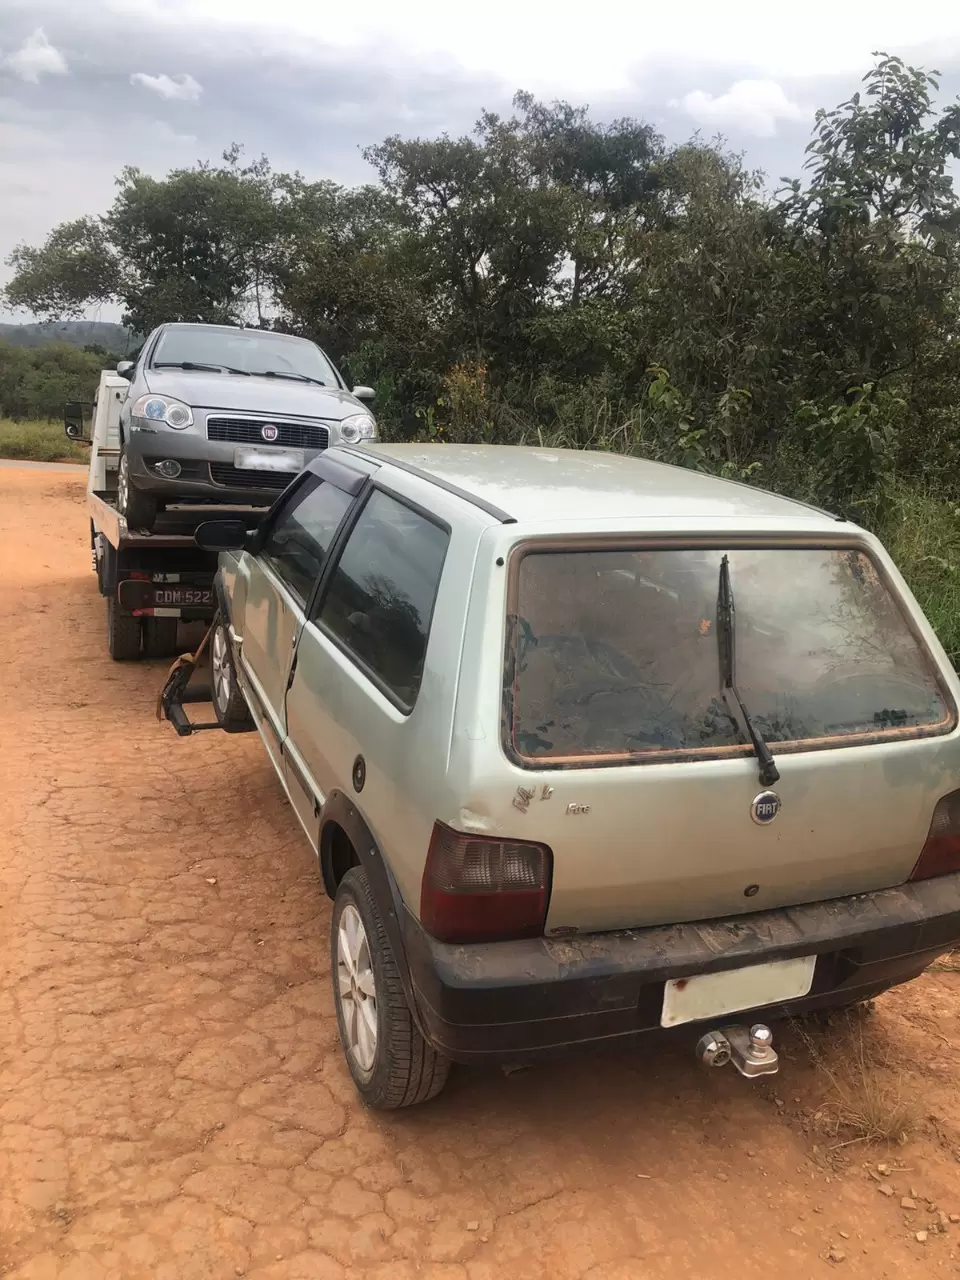 Carros são localizados em meio a mata na comunidade rural de Buritis